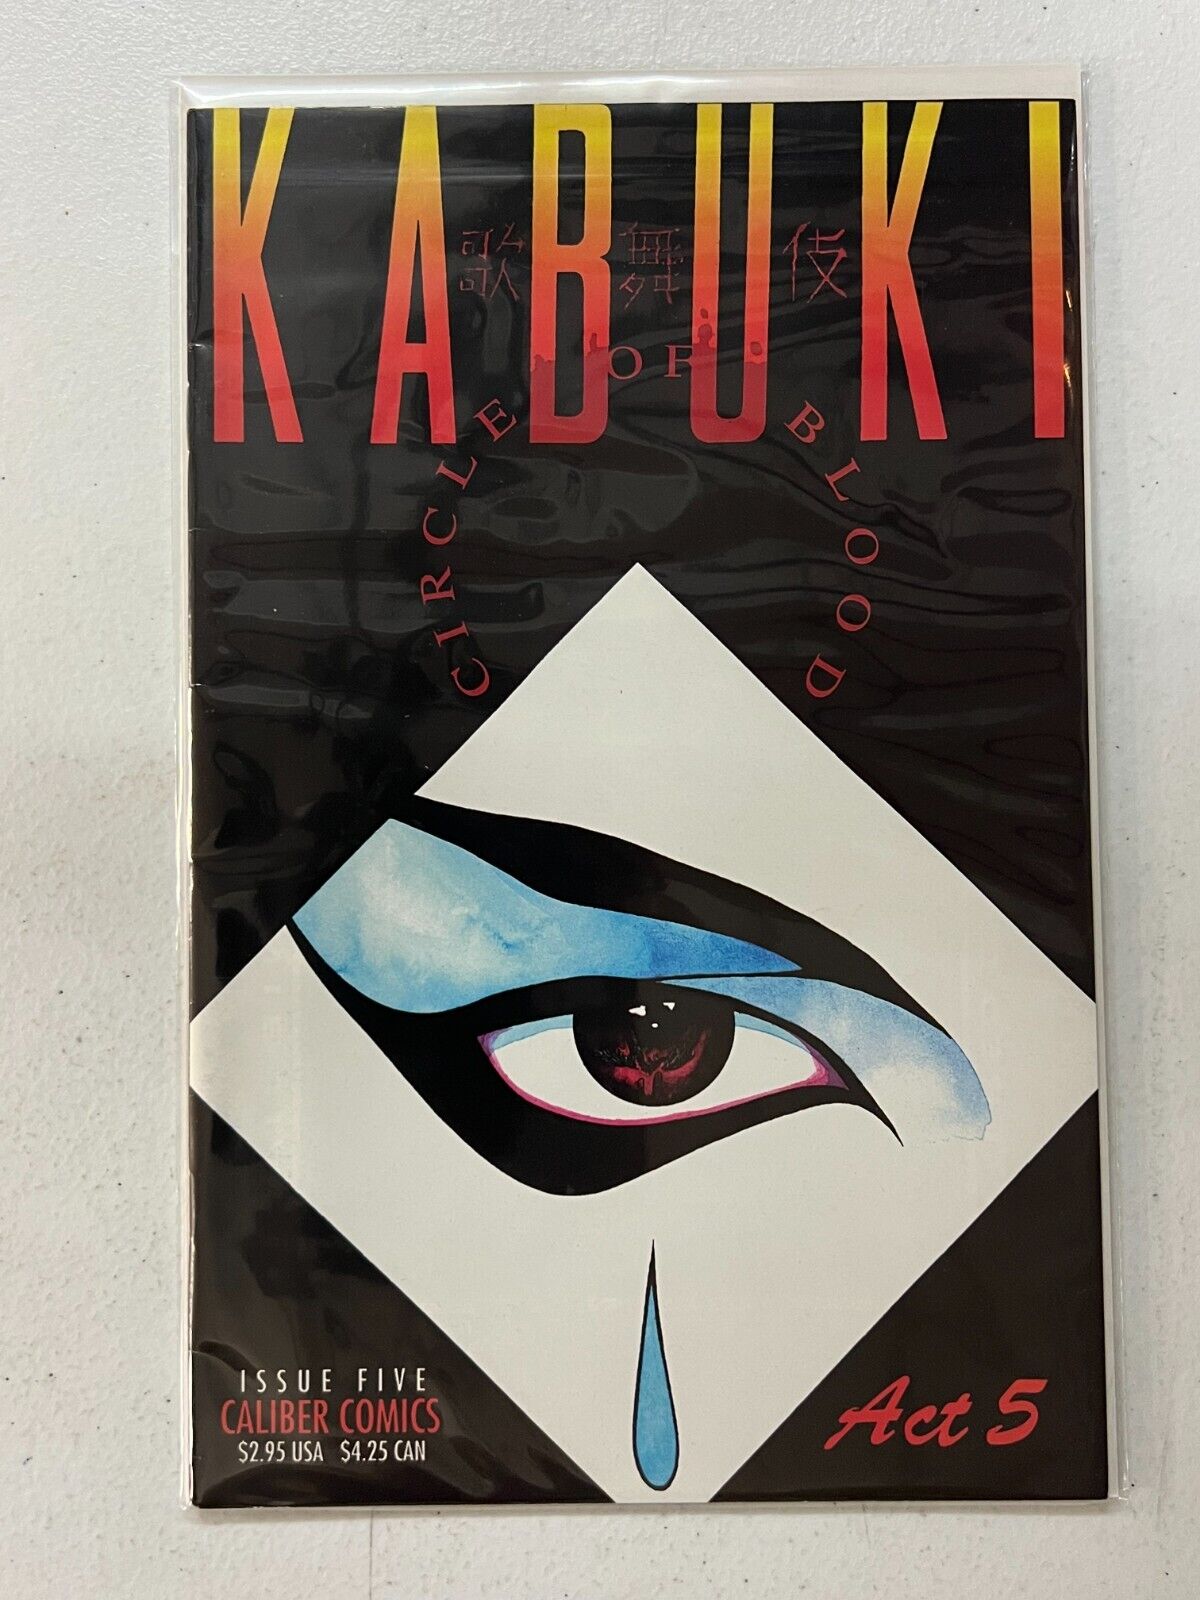 1995 Caliber Comics Kabuki Circle of Blood #5 David Mack | Combined Shipping B&B